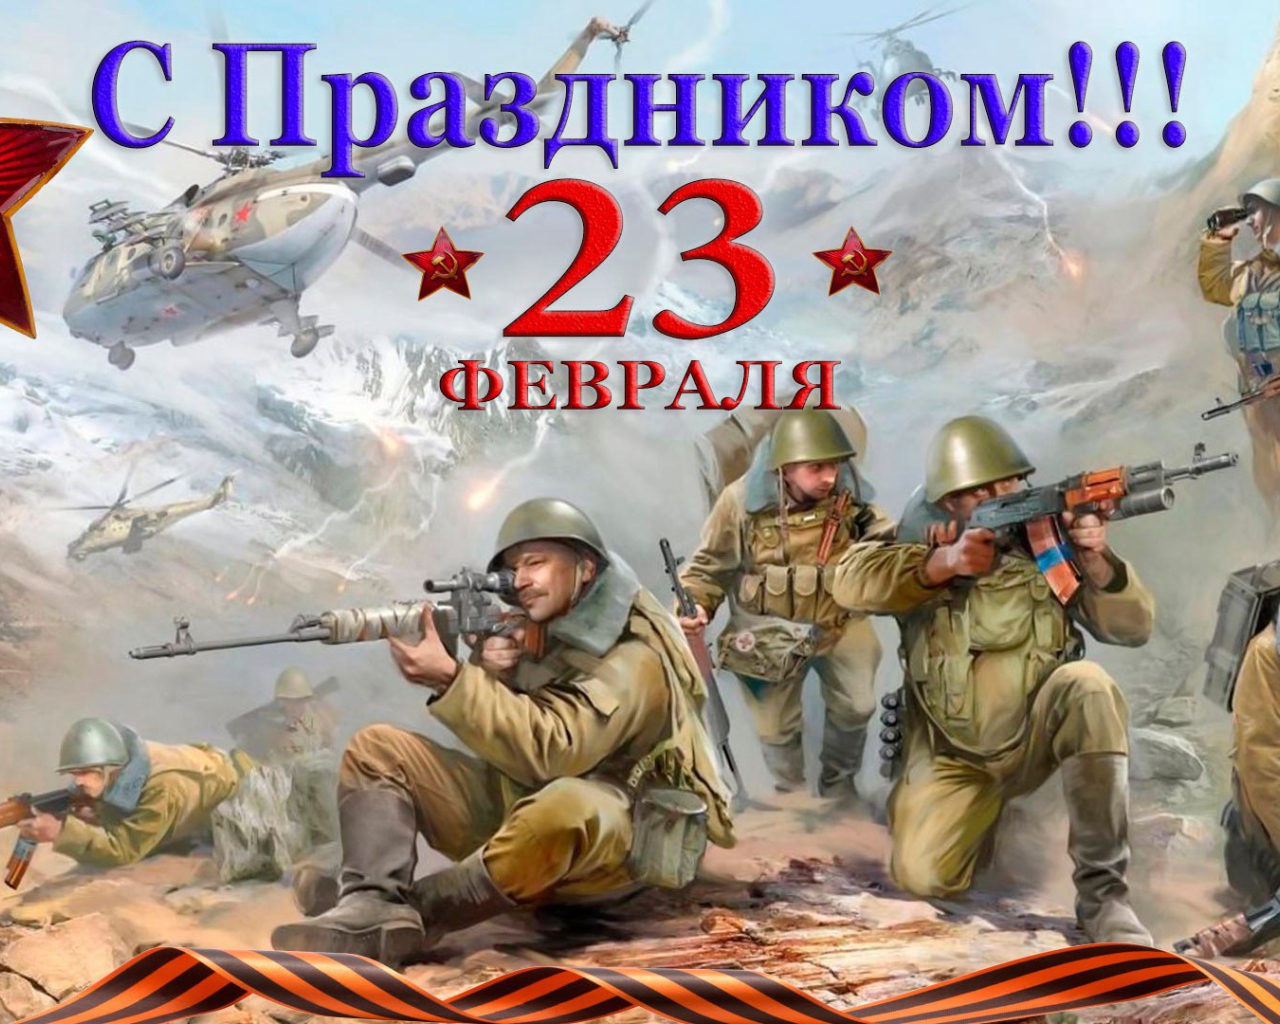 Открытка с солдатами на праздник 23 февраля 